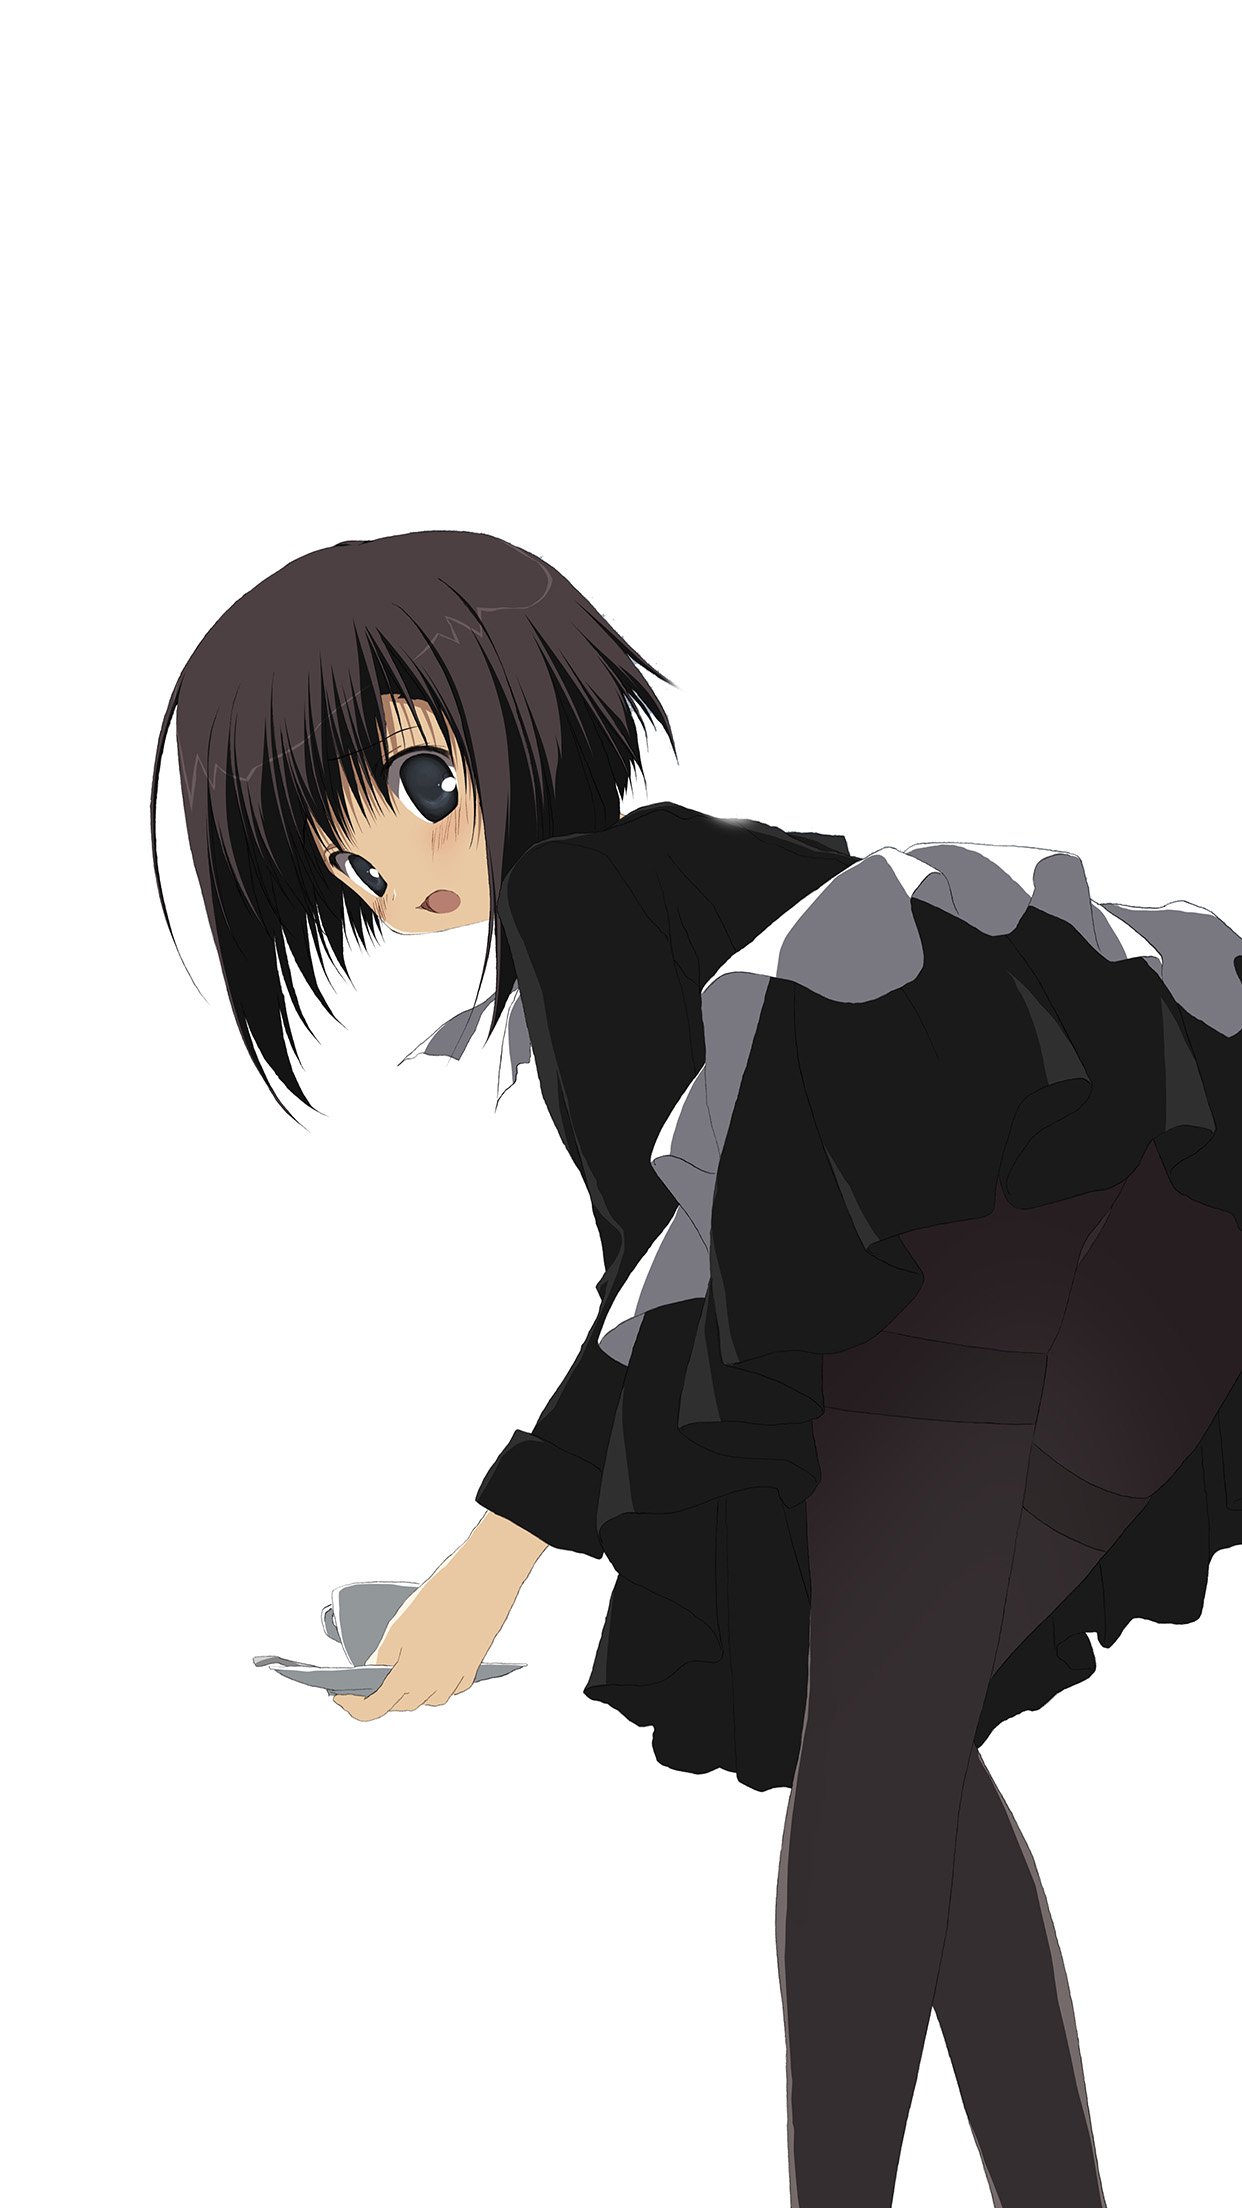 Girl Anime Black Dress Cute Illustration Art Android Wallpaper